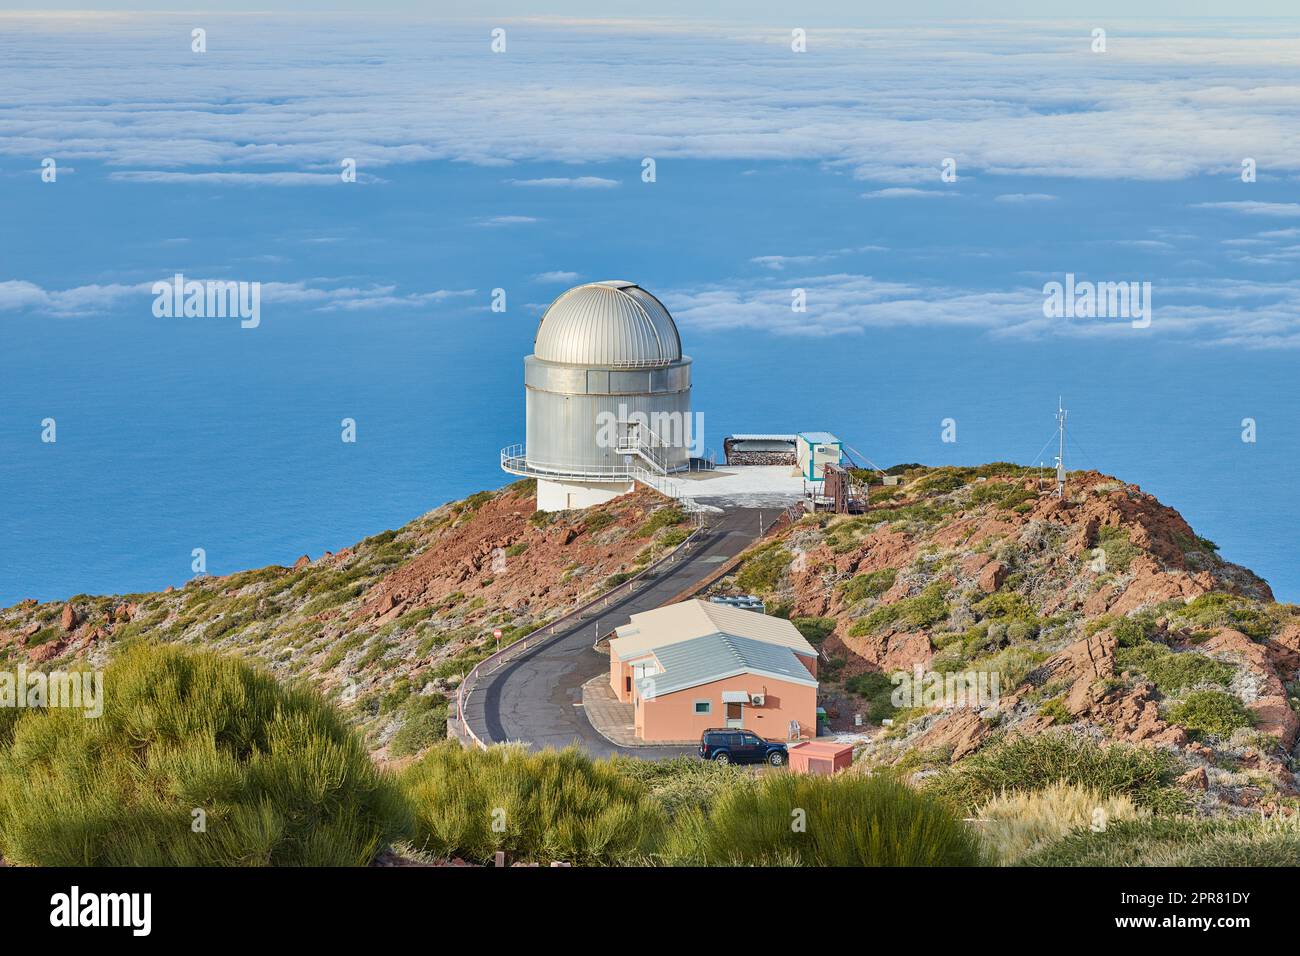 Observatoire Roque de los Muchachos à la Palma. Une route vers un observatoire astronomique avec ciel bleu et espace de copie. Télescope entouré de verdure et situé sur une île au bord d'une falaise. Banque D'Images